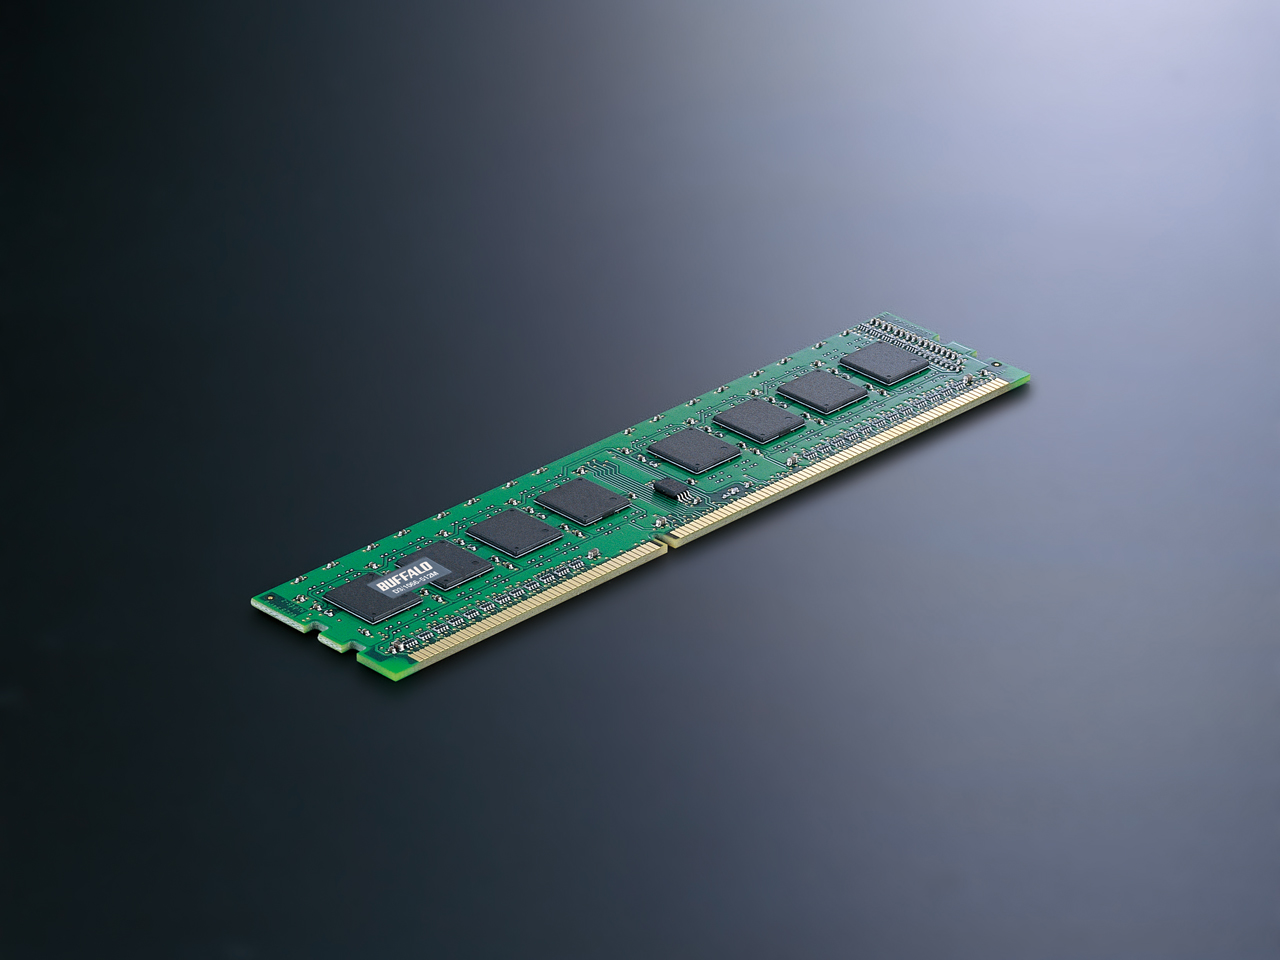 Immagine pubblicata in relazione al seguente contenuto: Buffalo lancia le prime DIMM DDR3 a 1066MHz e 240-pin | Nome immagine: news4881_1.jpg